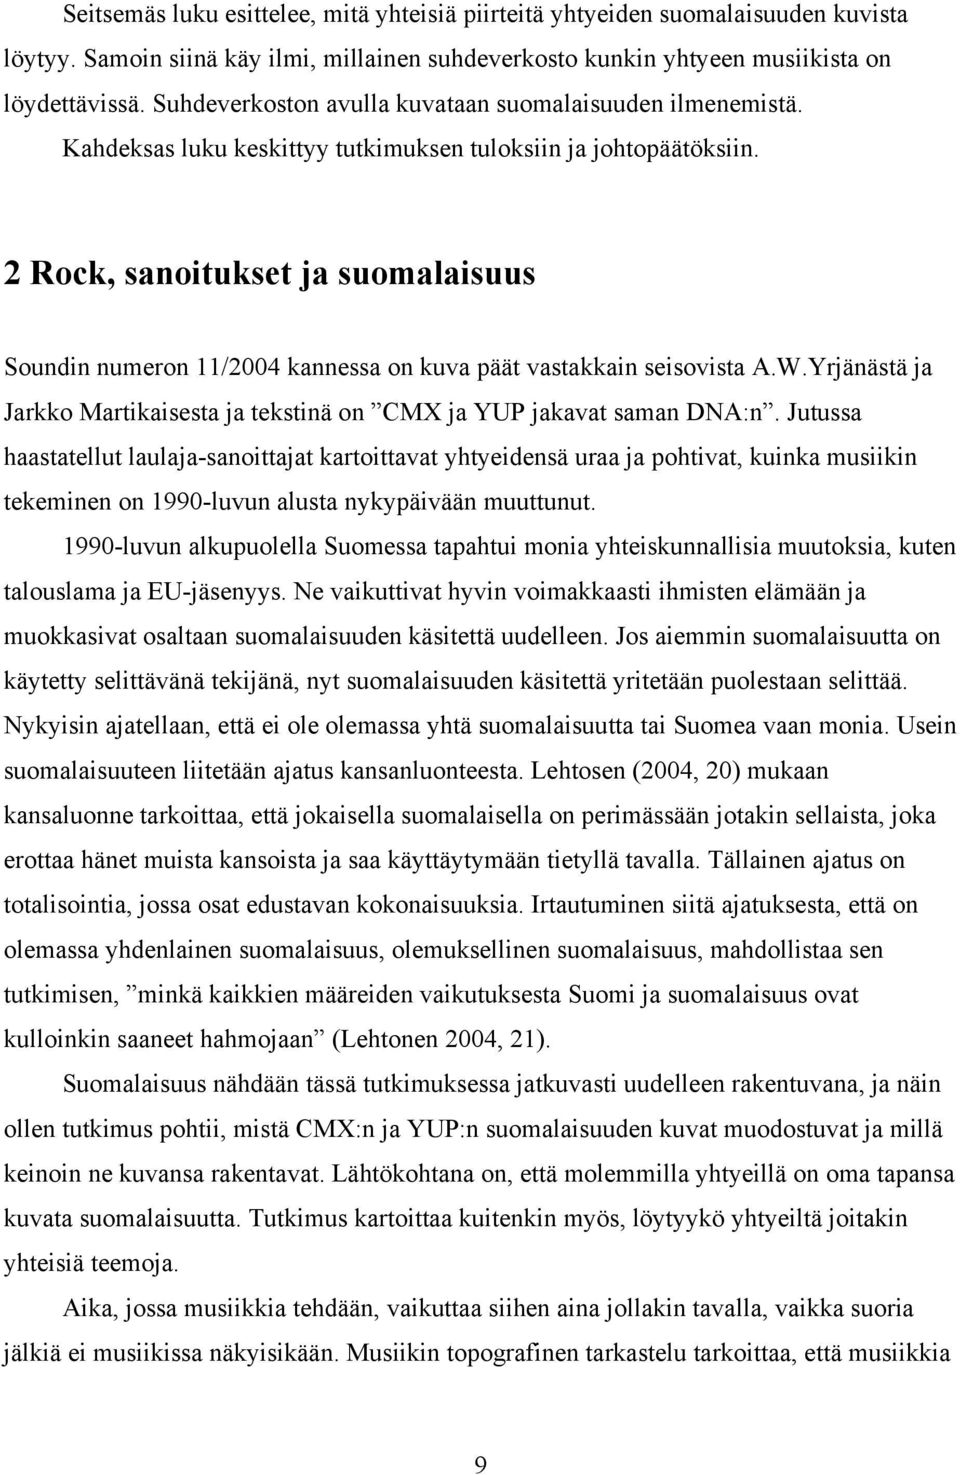 2 Rock, sanoitukset ja suomalaisuus Soundin numeron 11/2004 kannessa on kuva päät vastakkain seisovista A.W.Yrjänästä ja Jarkko Martikaisesta ja tekstinä on CMX ja YUP jakavat saman DNA:n.